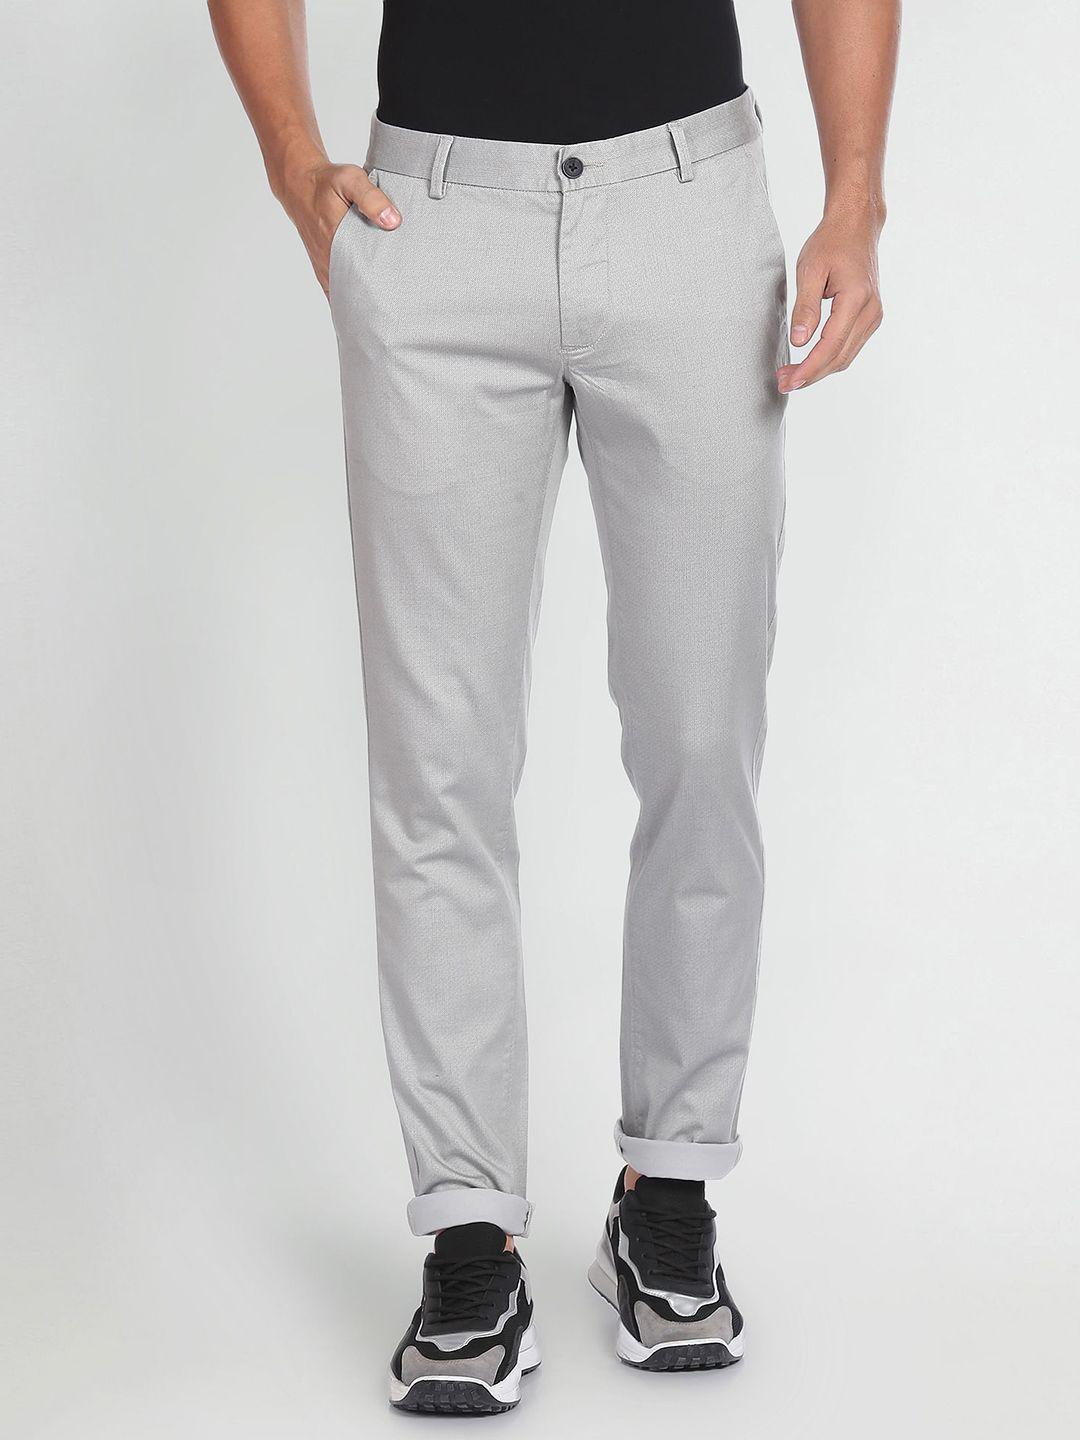 arrow sport men geometric printed original slim fit low-rise casual trousers